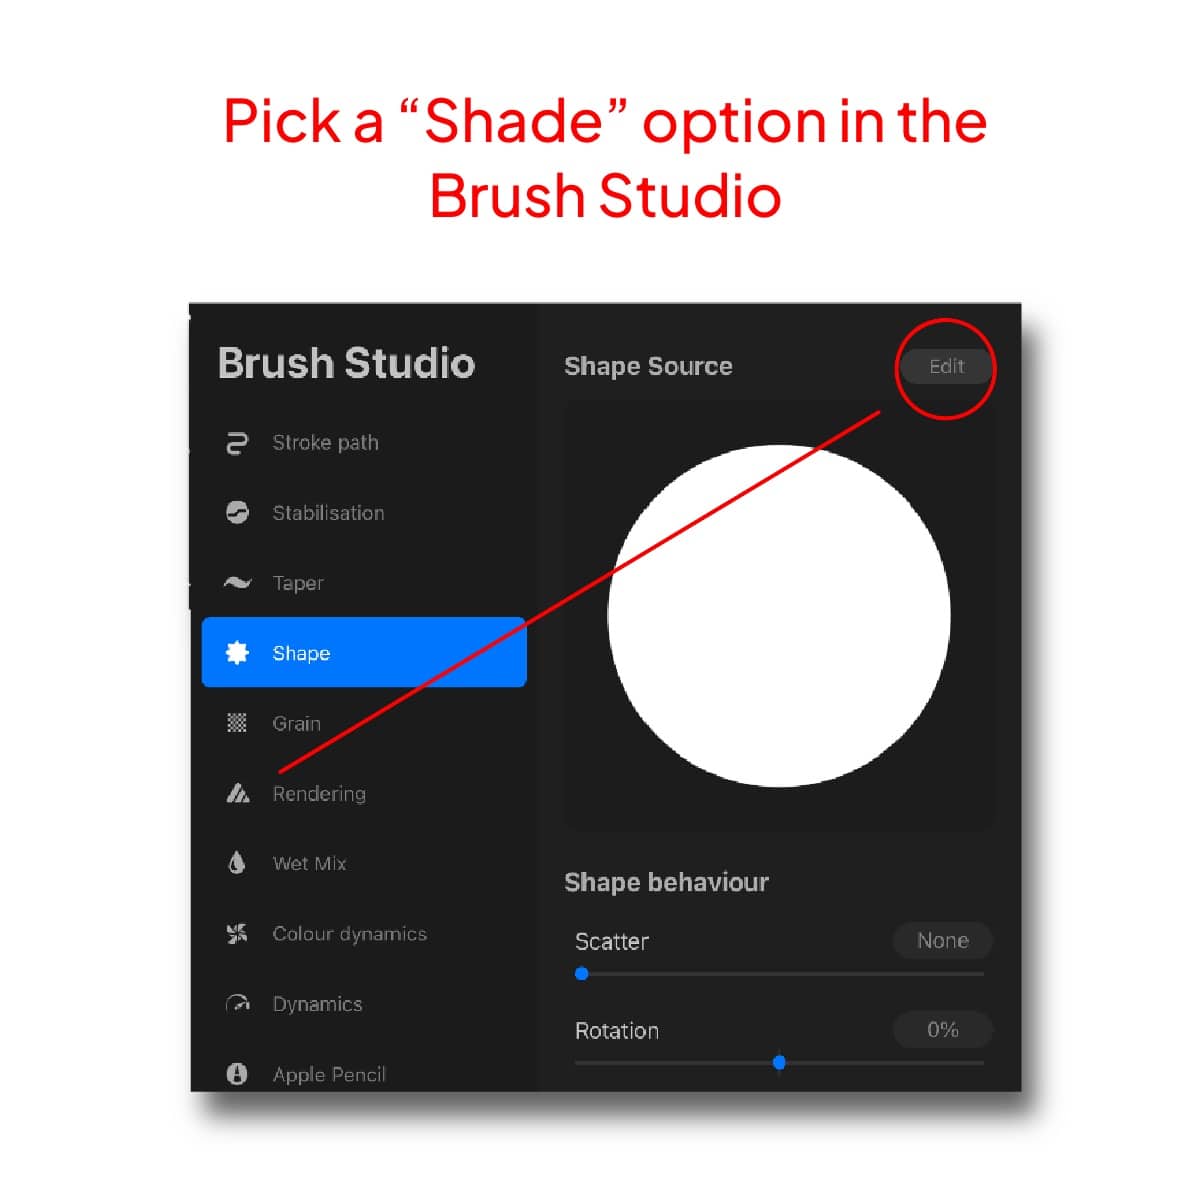 Brush studio Shade option